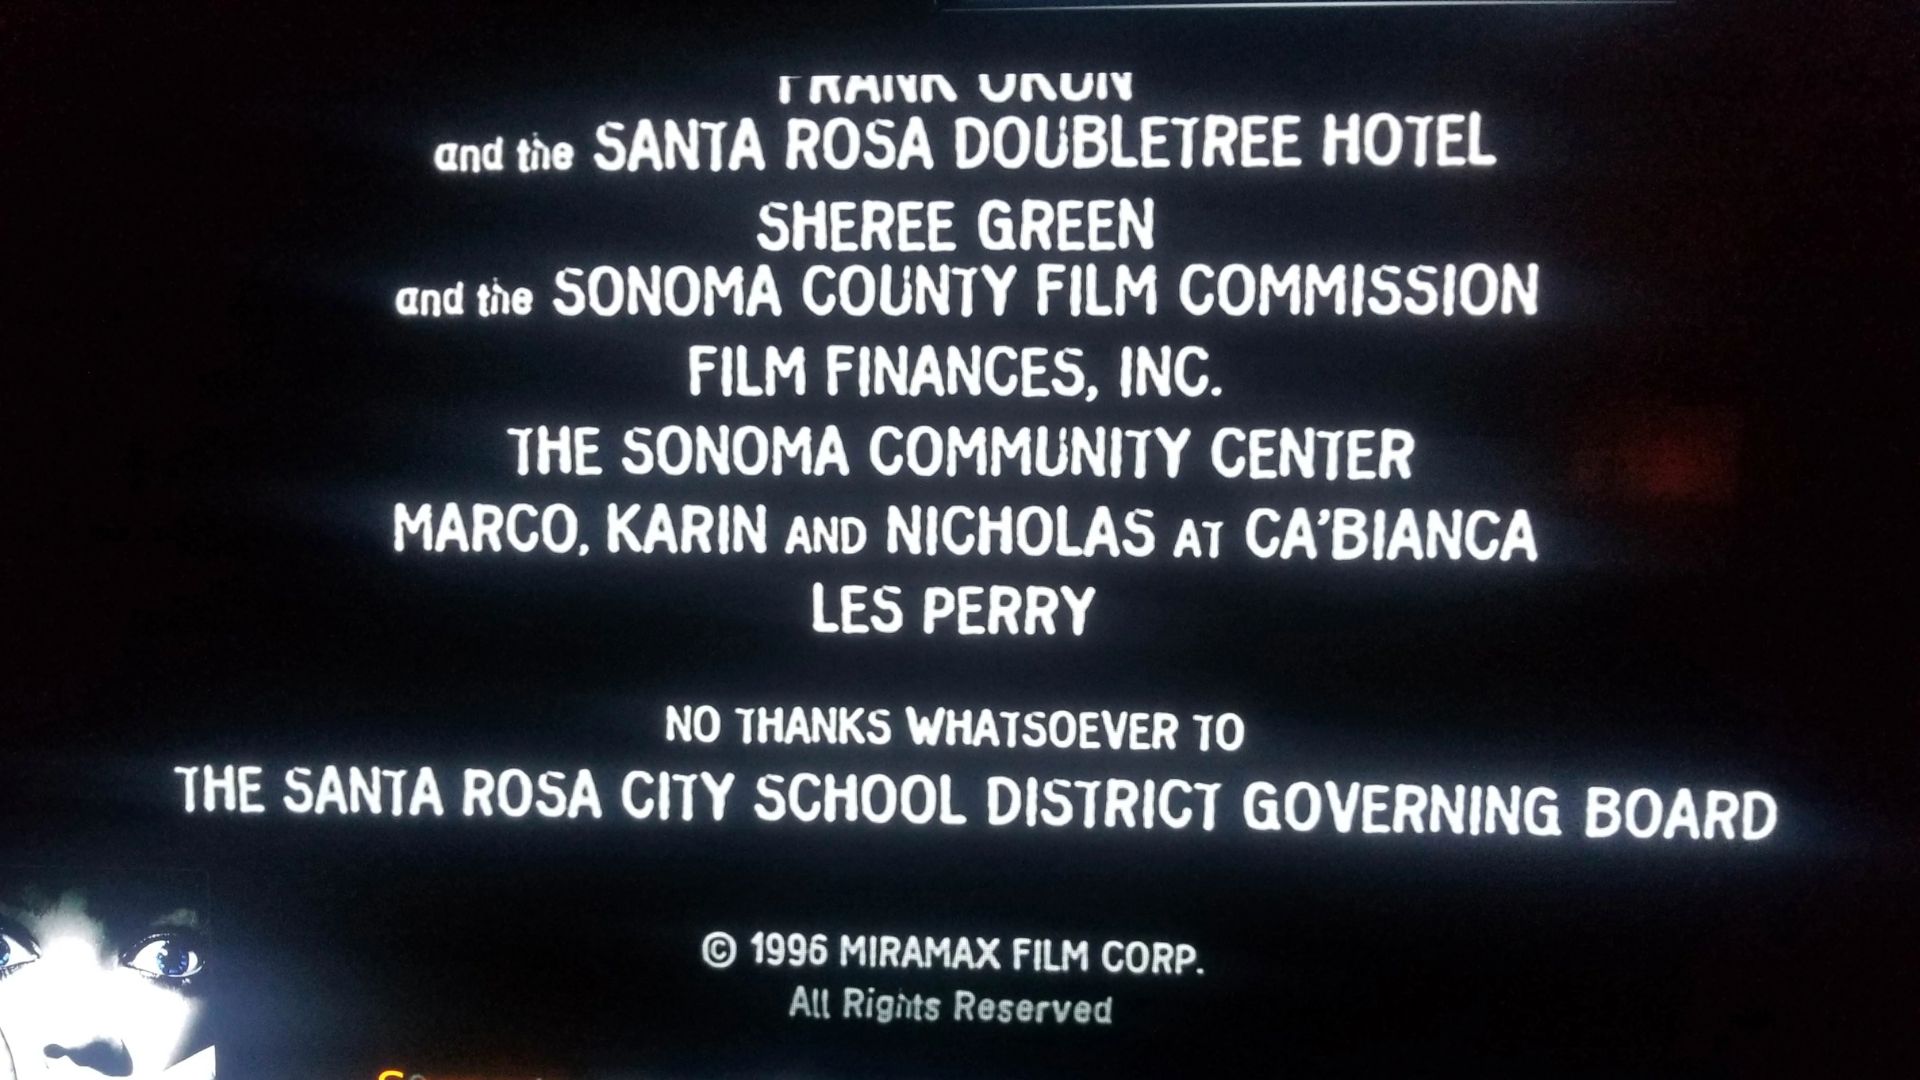 "Agradecimento" de Wes Craven à Administração do Distrito Escolar de Santa Rosa, que proibiu as filmagens de Pânico em um colégio da cidade (Foto: Reprodução/Dimension Films))